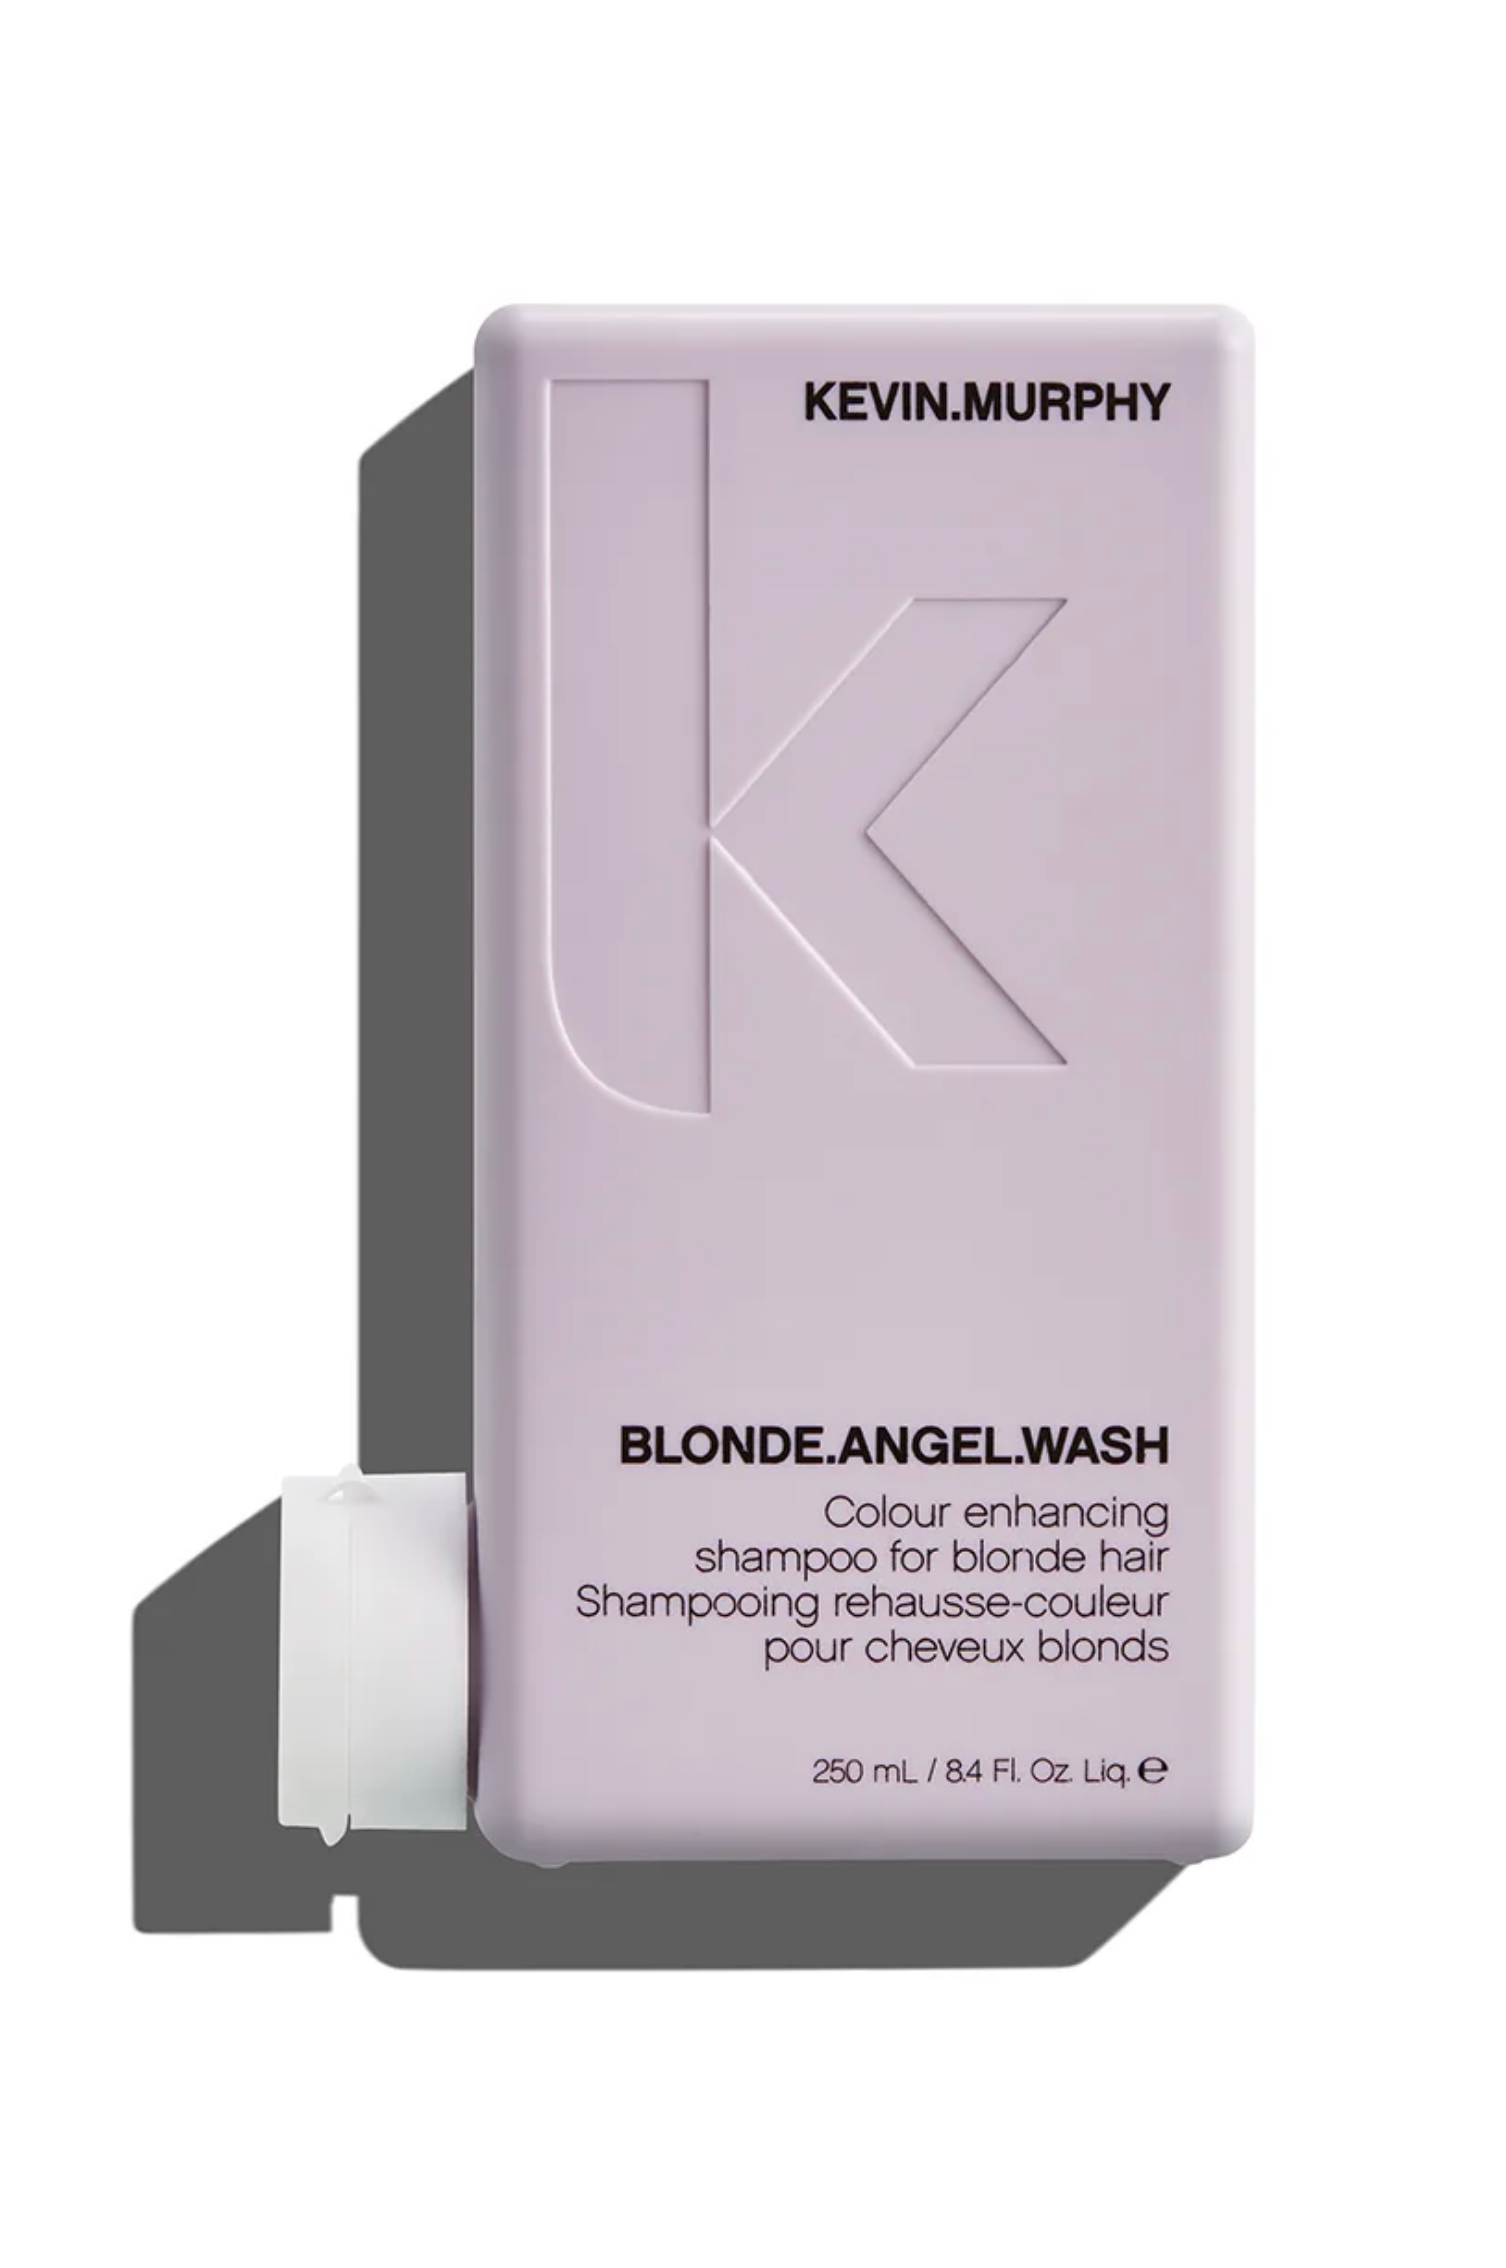 Shampooing rehausse couleur pour cheveux blonds Kevin Murphy Blonde Angel Wash - Crème Salon